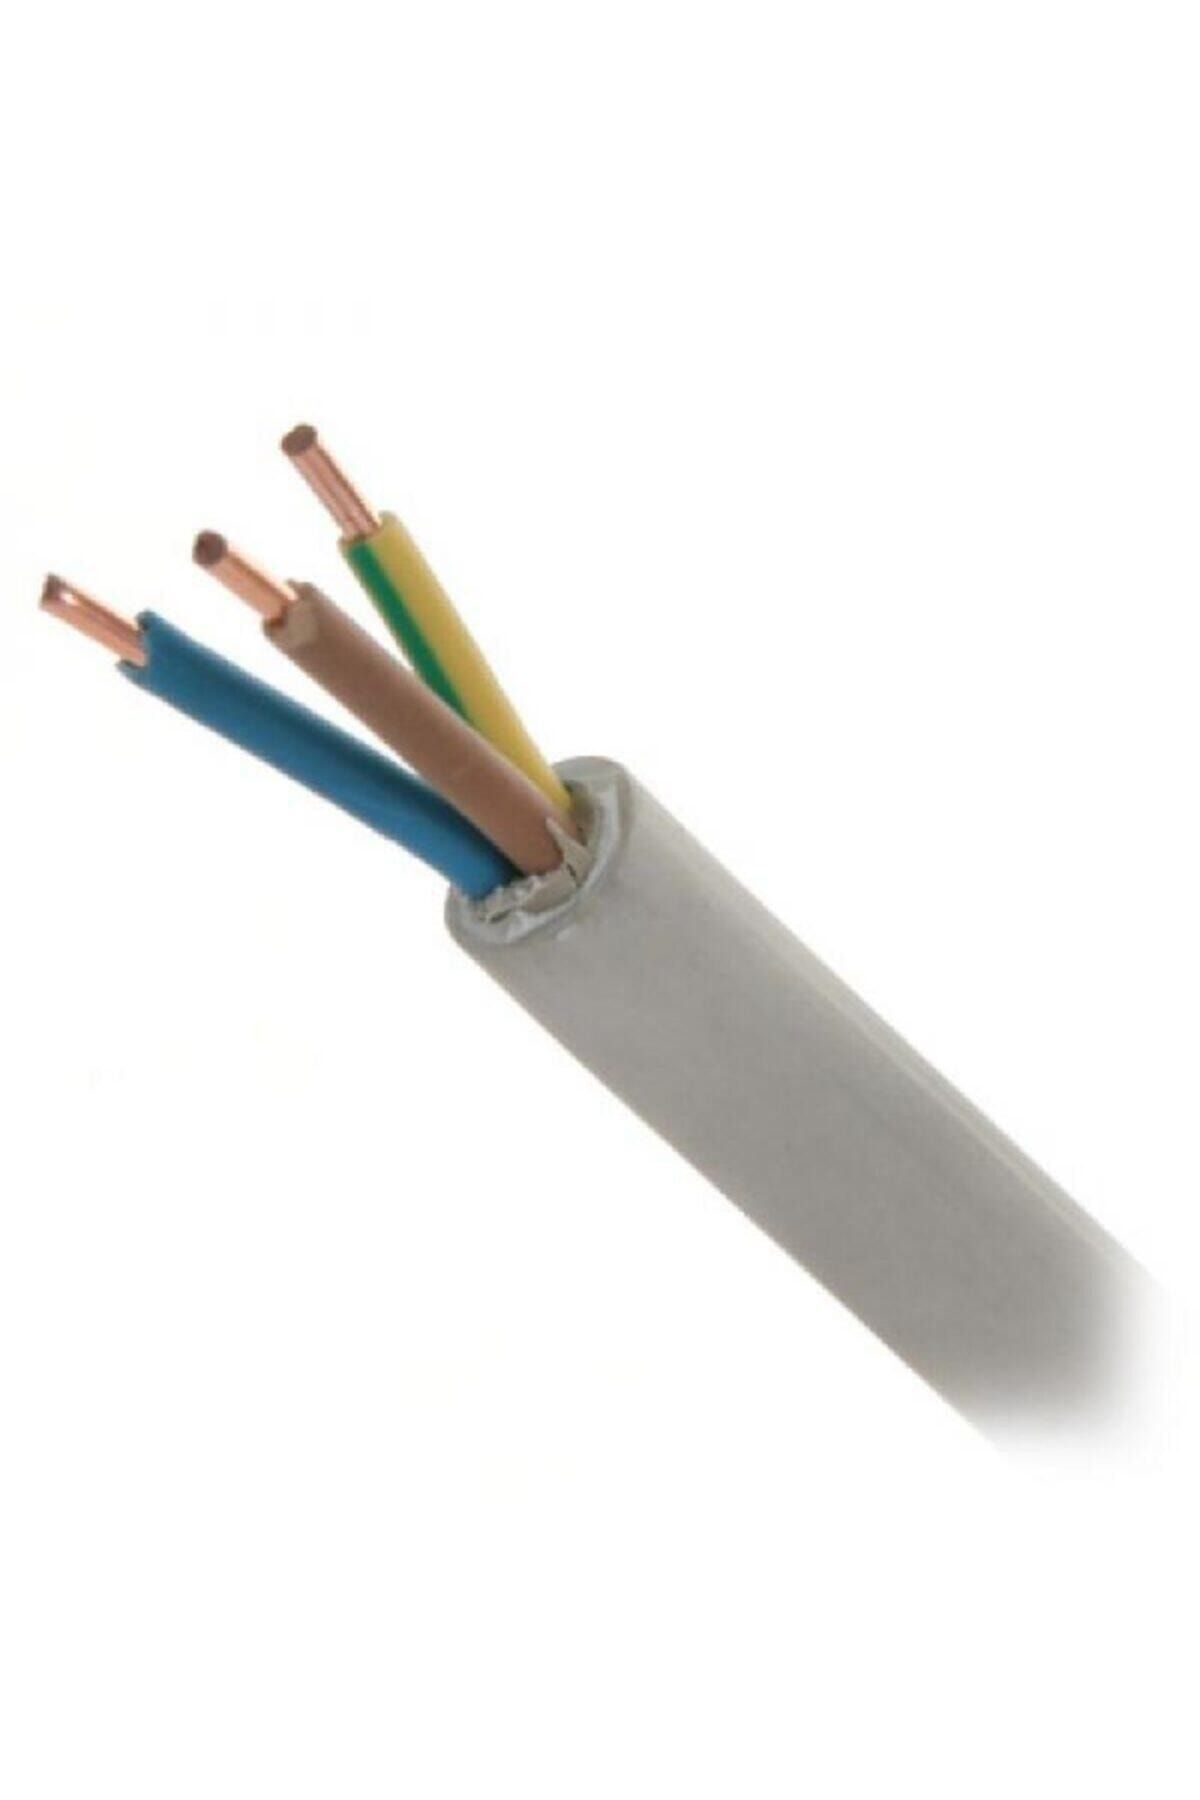 Koç 3x2.5 Nym Antigron Topraklı Kablo Tam Bakır Kablo Full Bakır Kablo=(50 Metre Kargo Bedava)